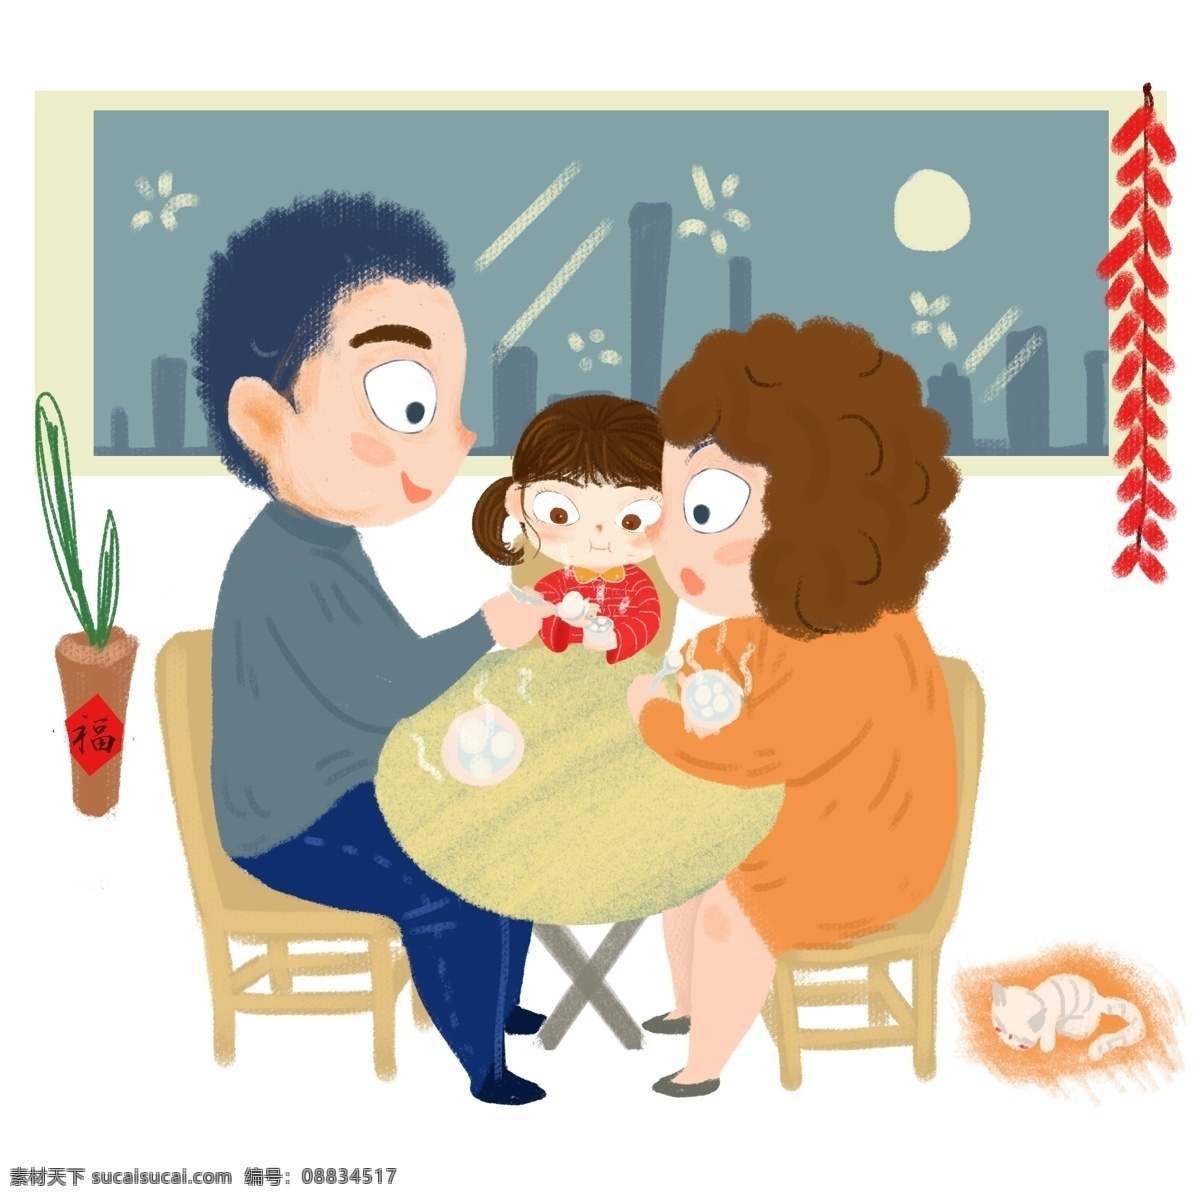 节日 团聚 一家人 吃 汤圆 节日团聚 幸福的一家人 吃汤圆 团圆插画 红色的福字 鞭炮挂饰 盆栽 手绘卡通